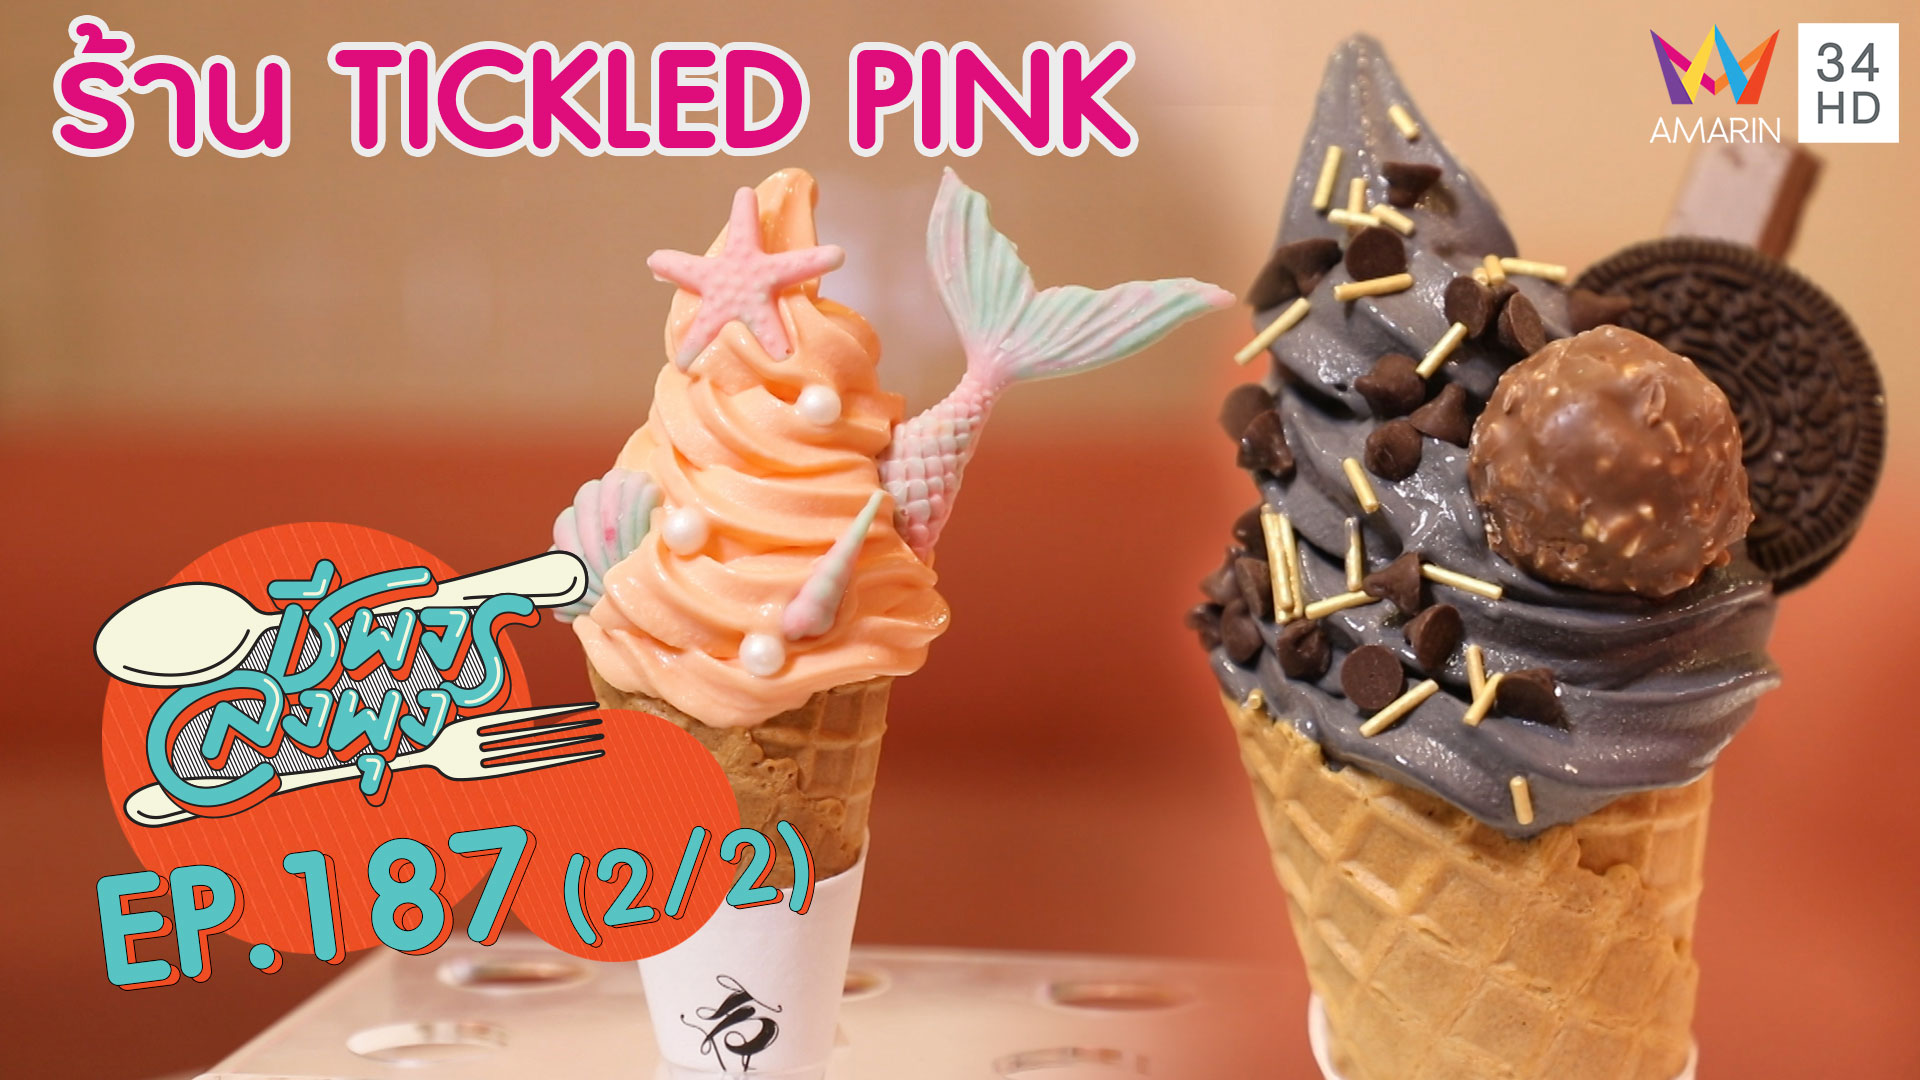 ชีพจรลงพุง ซีซั่น 5 | ไอศกรีมน่ารักฟรุ้งฟริ้ง ทานแล้วไม่อ้วน! @"ร้าน Tickled Pink"|4 ม.ค. 63 (2/2)